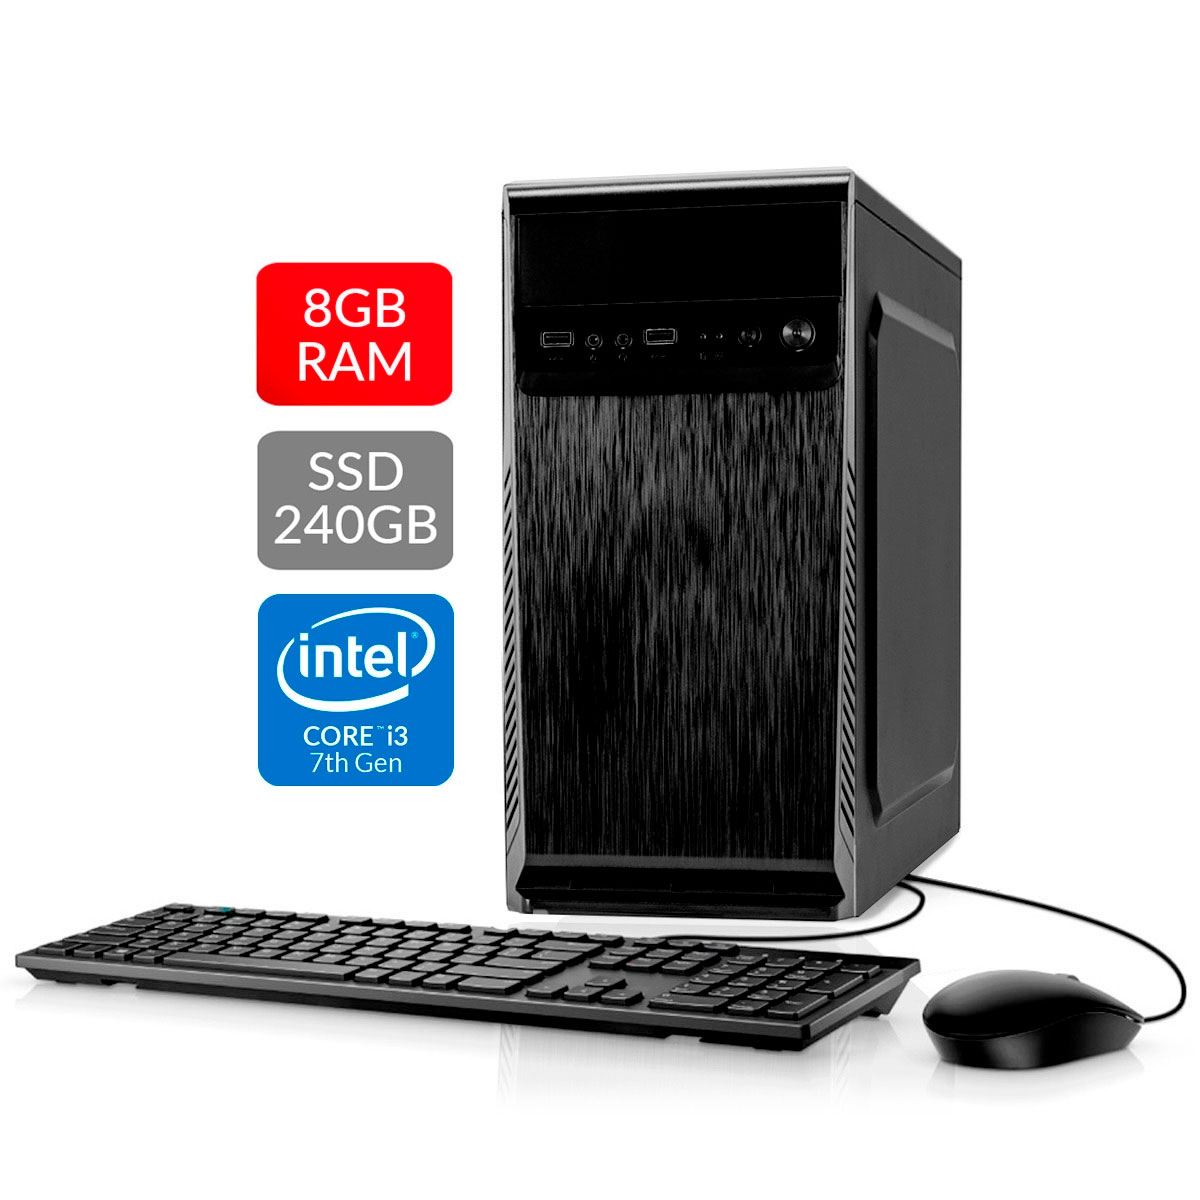 Computador Bits WorkHard - Intel i3 7100, 8GB, SSD 240GB, Kit Teclado e Mouse, FreeDos - 2 Anos de garantia